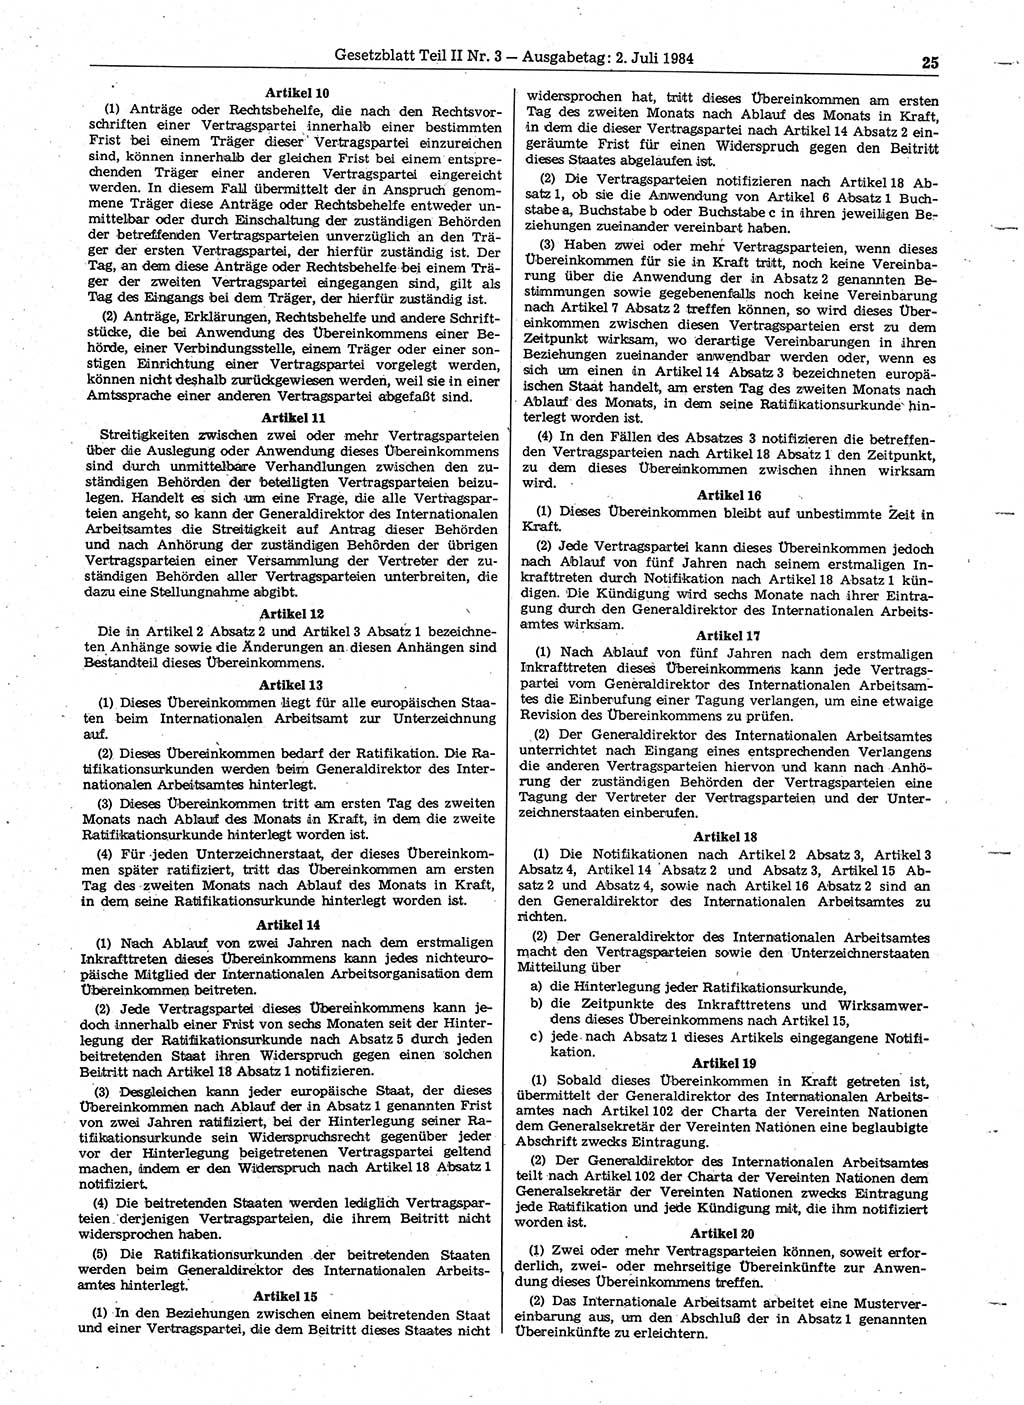 Gesetzblatt (GBl.) der Deutschen Demokratischen Republik (DDR) Teil ⅠⅠ 1984, Seite 25 (GBl. DDR ⅠⅠ 1984, S. 25)